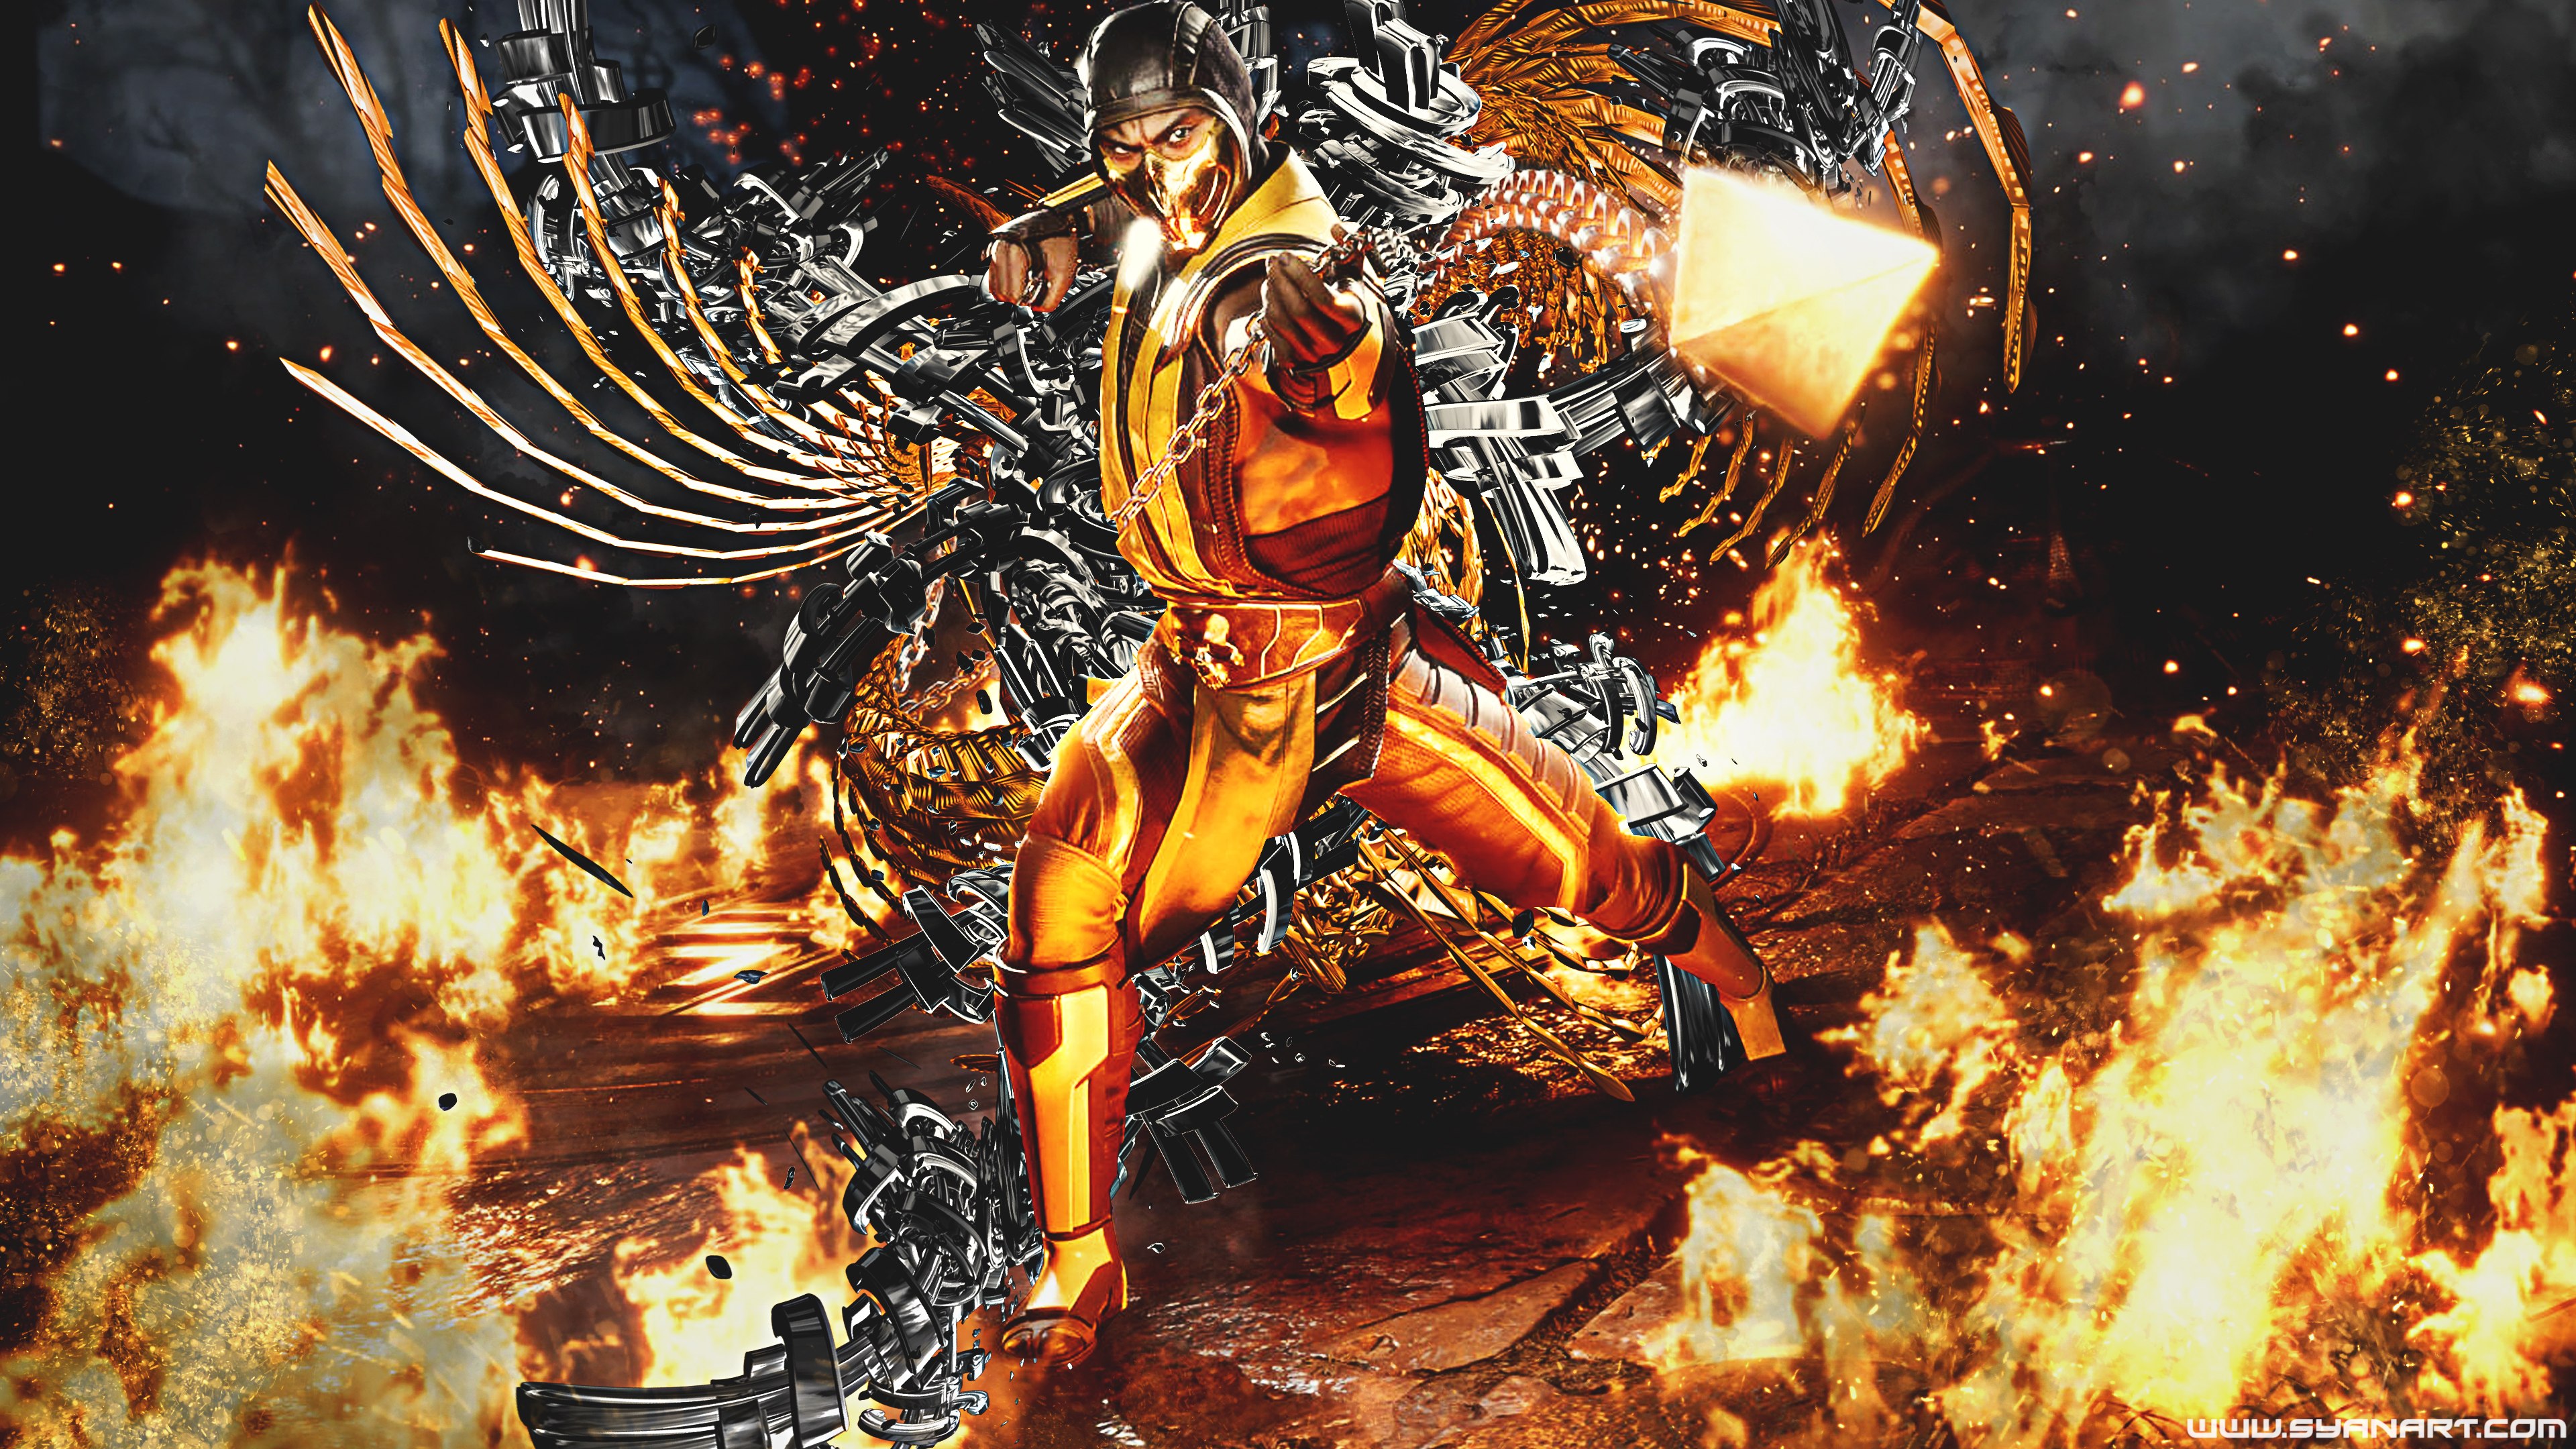 Mortal Kombat 11 Digital Wallpapers